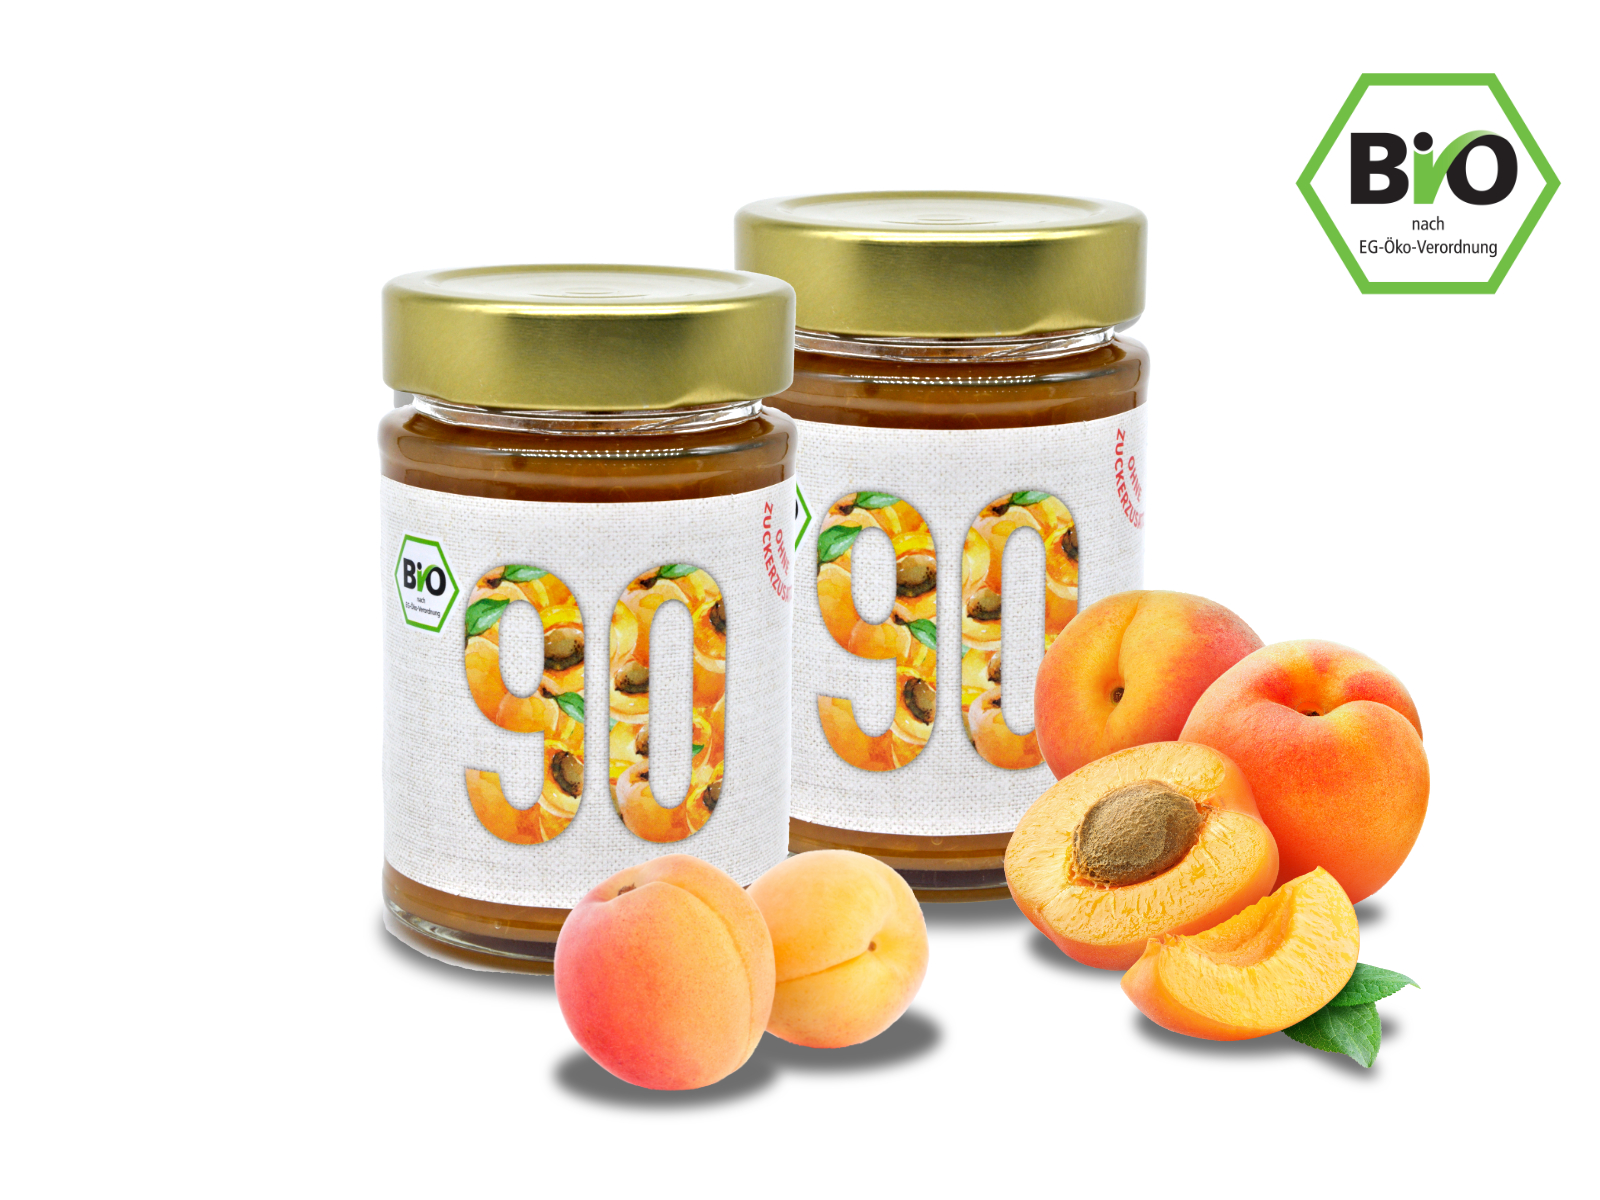 2x Sibani BIO 90% Fruchtaufstrich,  Aprikose, mit Erythrit* gesüßt, 180g